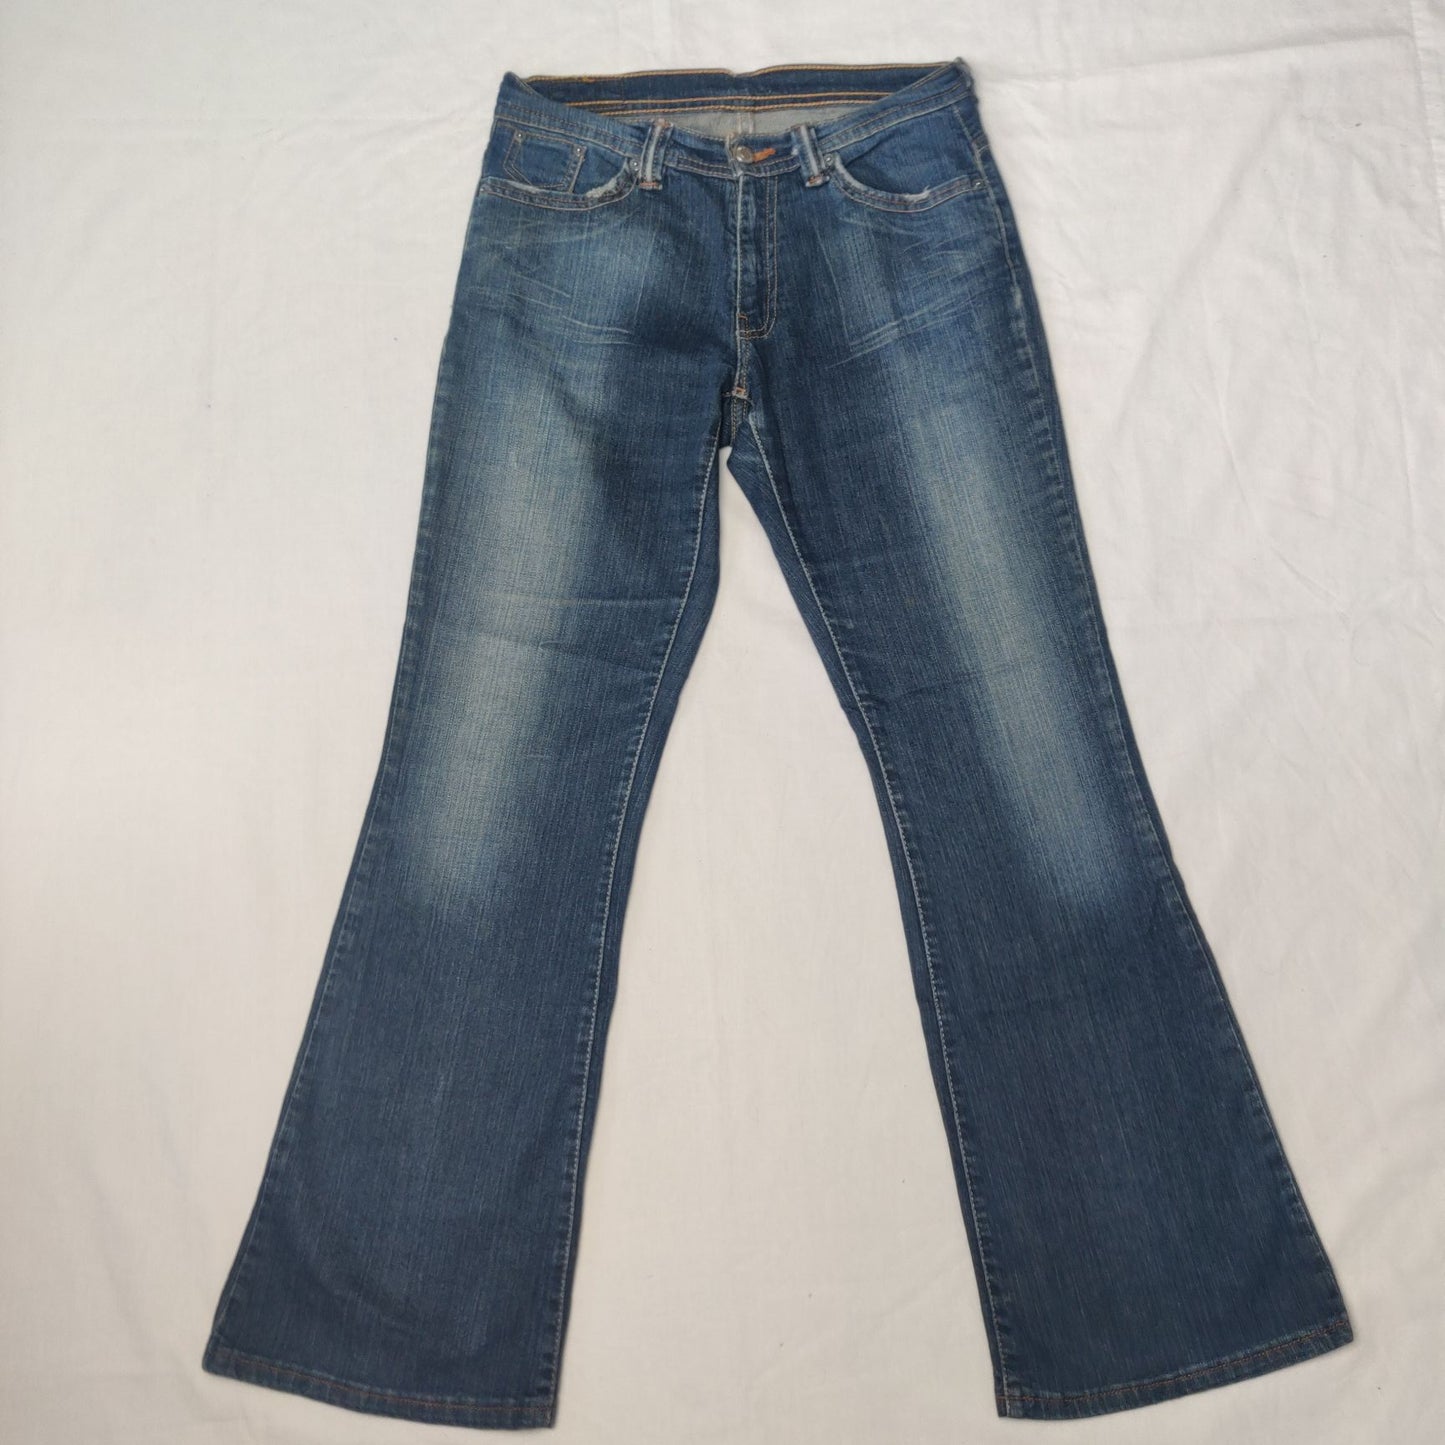 Levi's Vintage Blue Denim Bootcut Jeans Women Size W30/L30